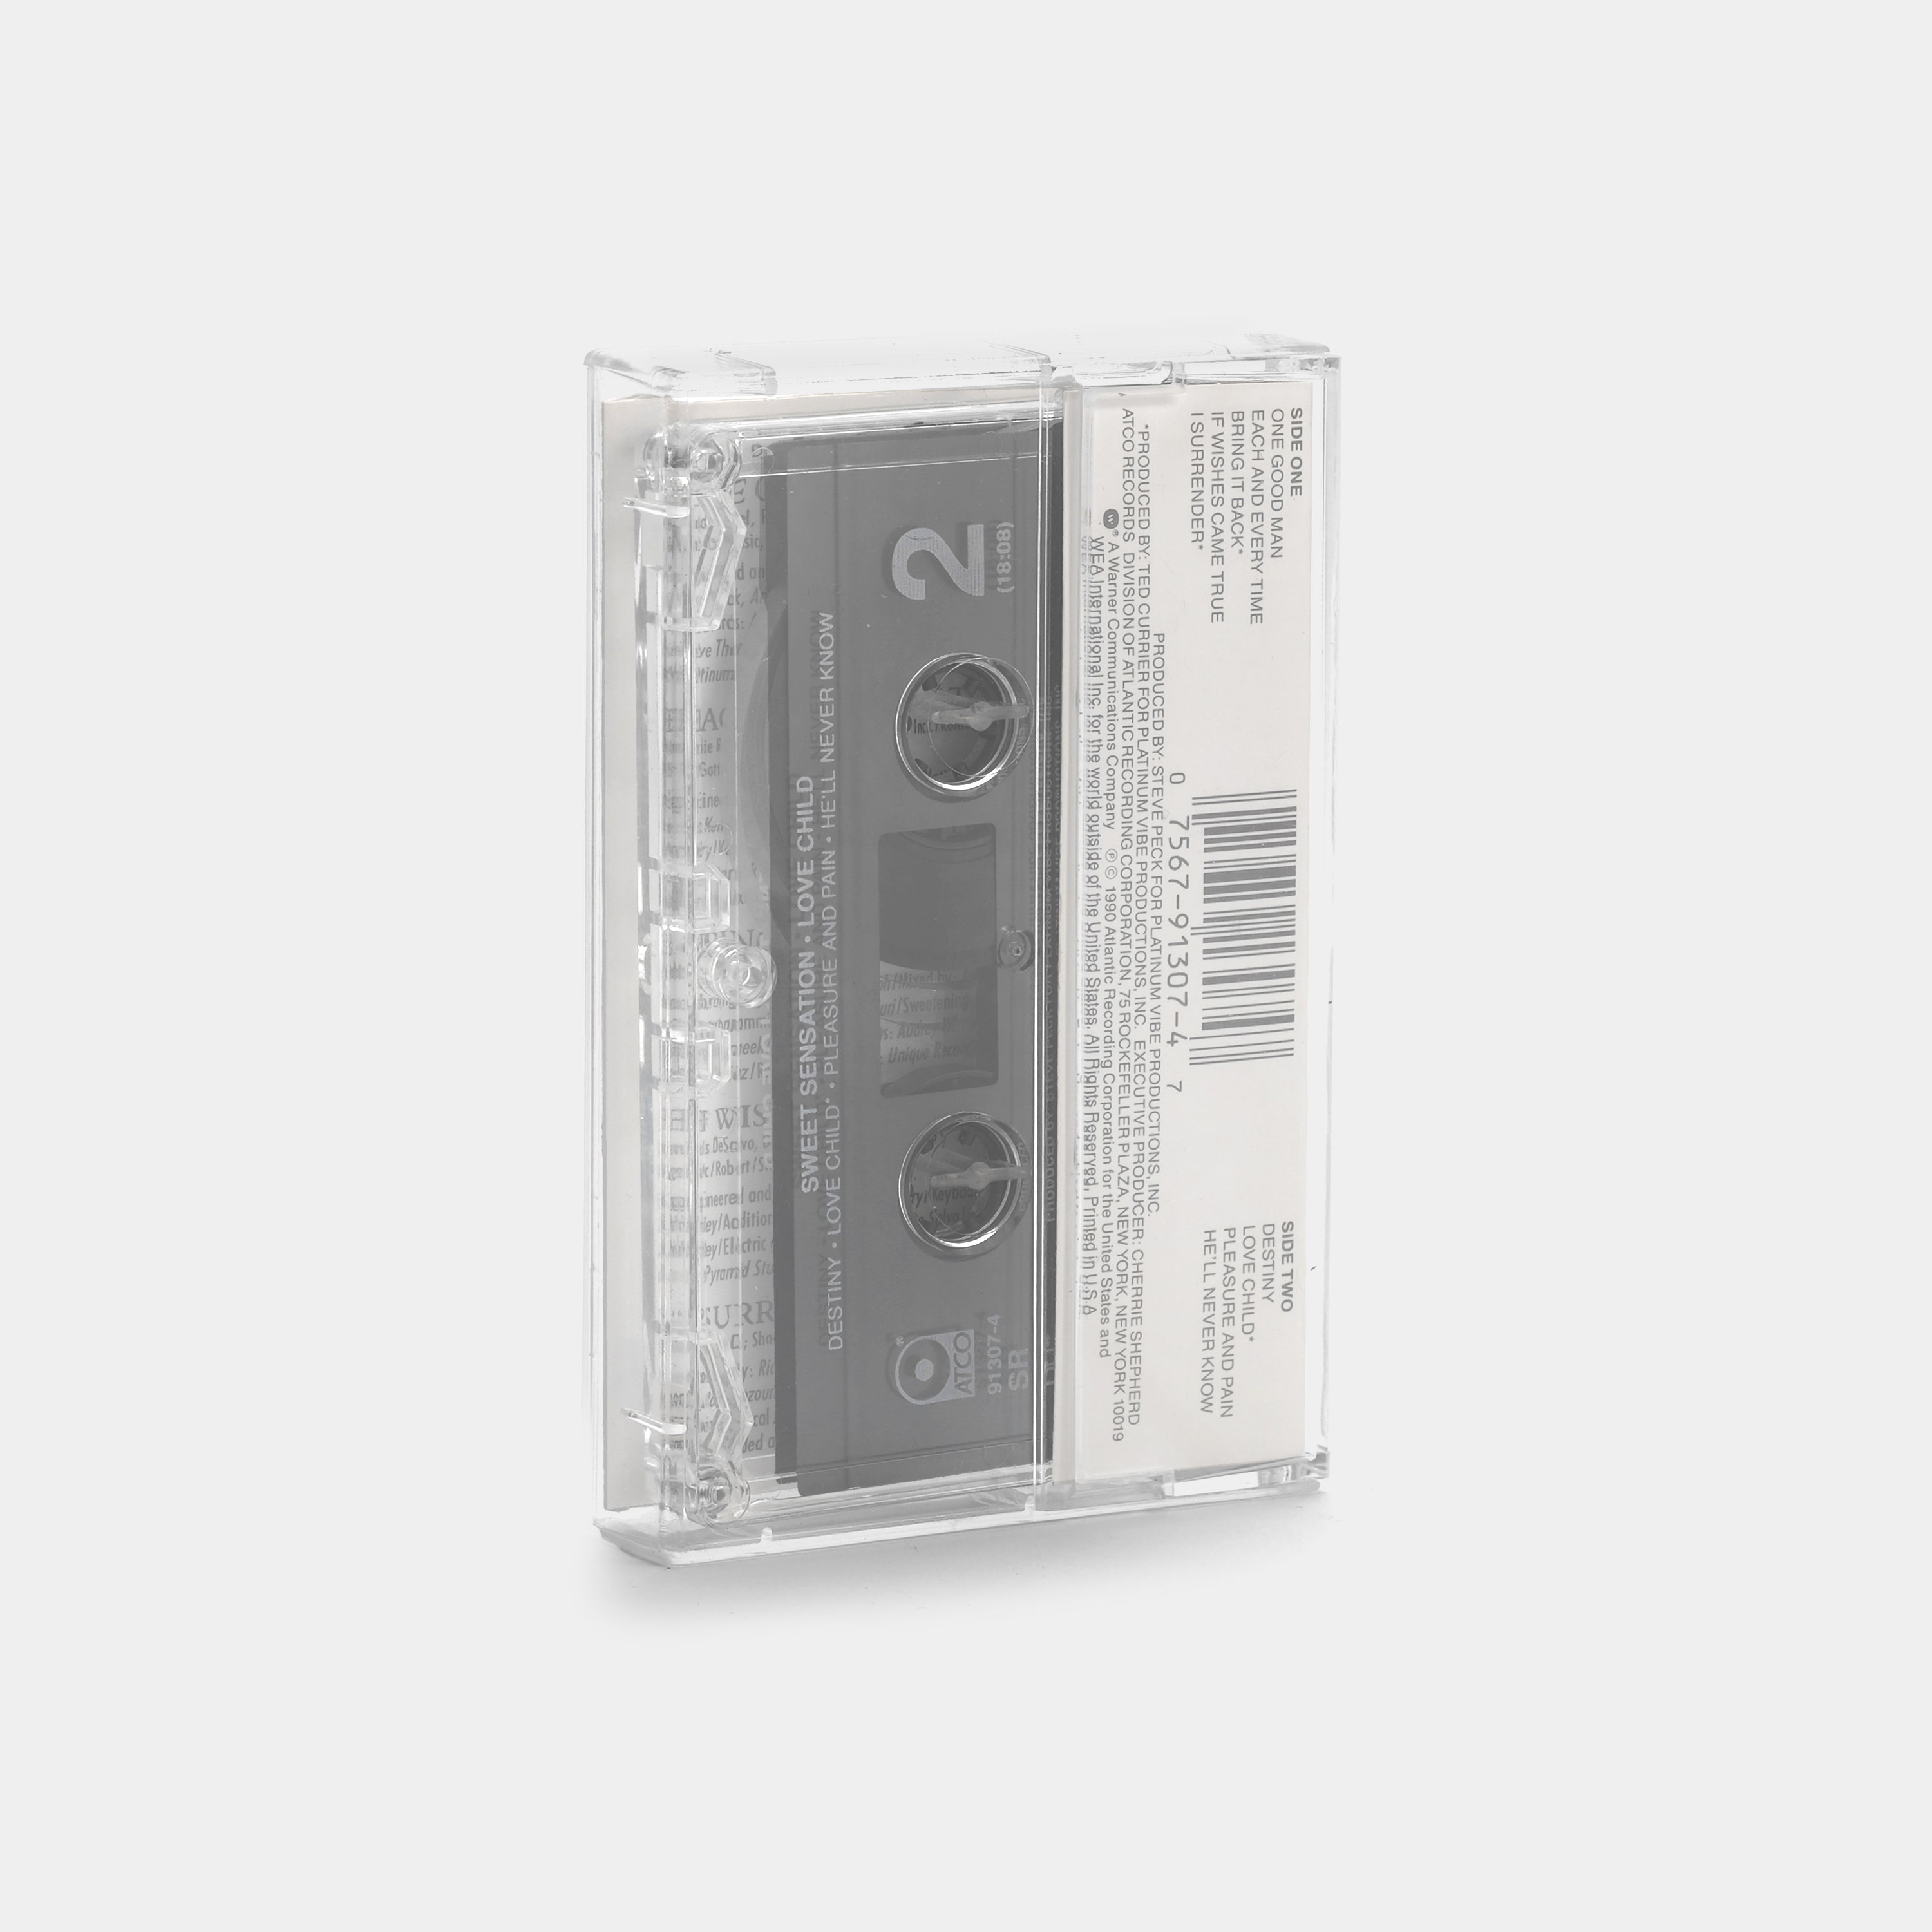 Sweet Sensation - Love Child Cassette Tape